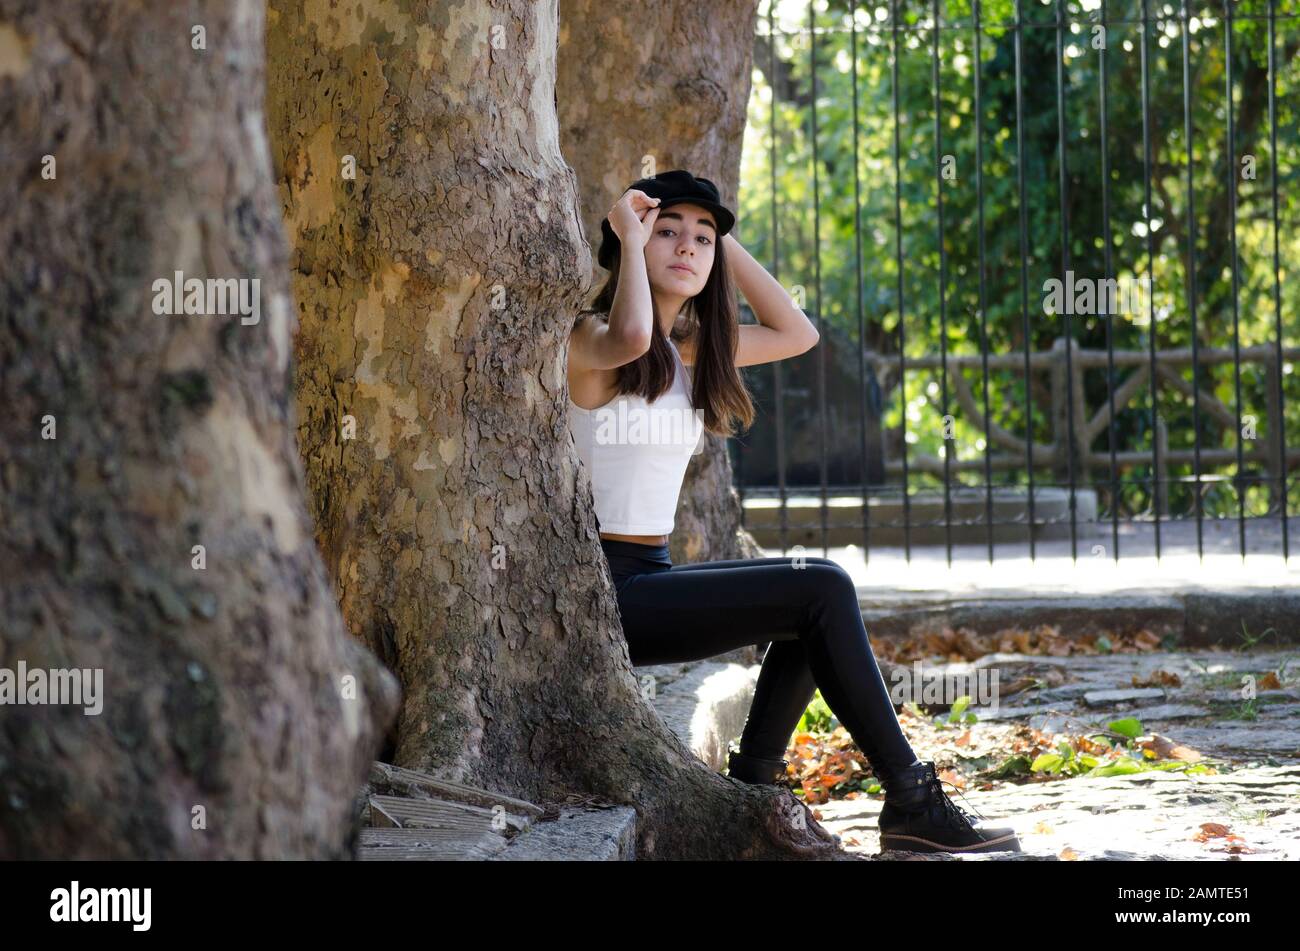 Adolescente sentada en el bordillo entre árboles, Argentina Foto de stock